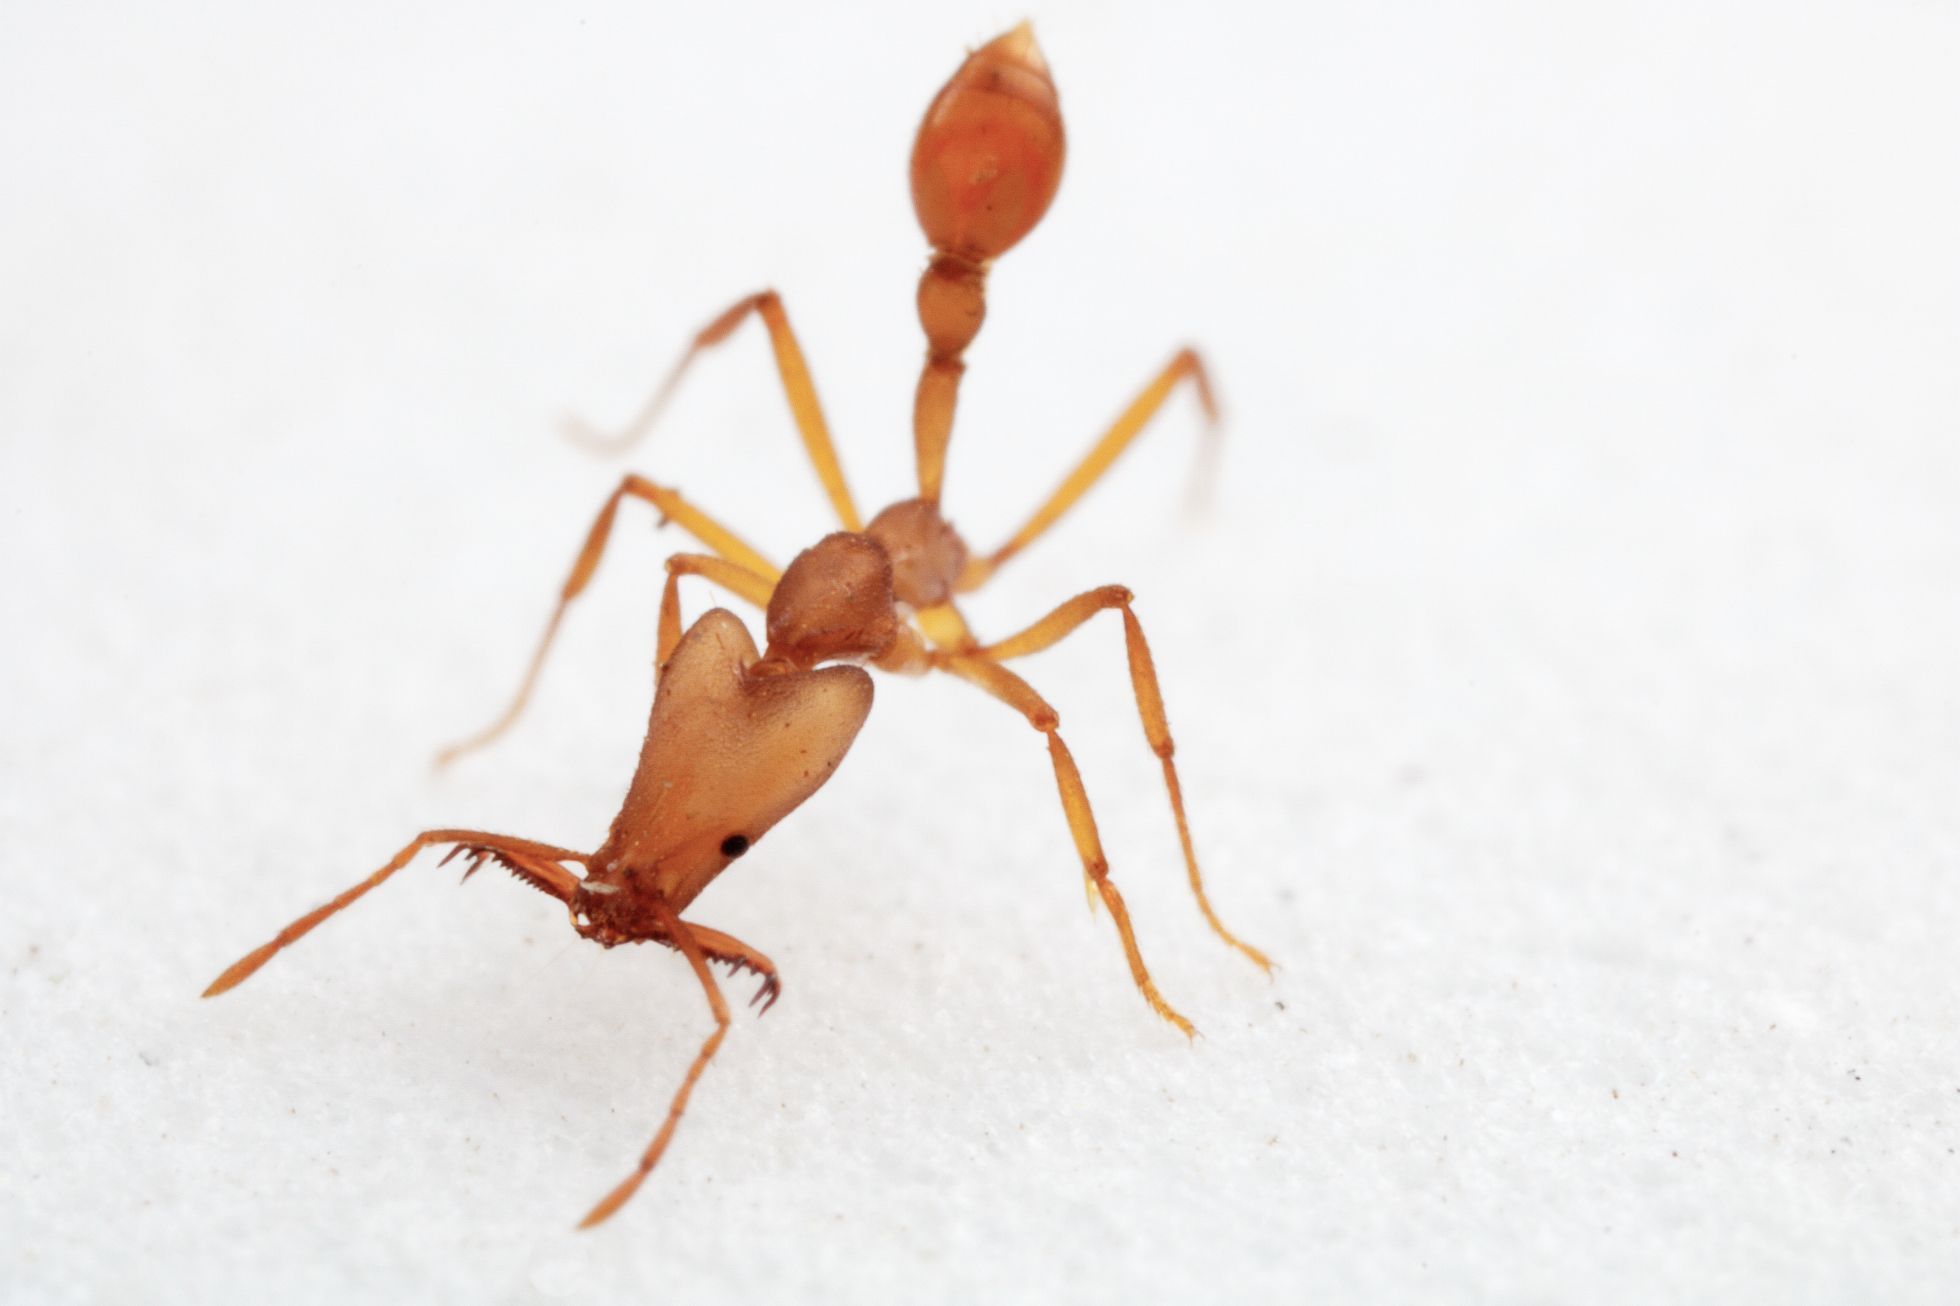 Jeden z nových nepopsaných druhů mravenců objevený během expedice v horském pralese.